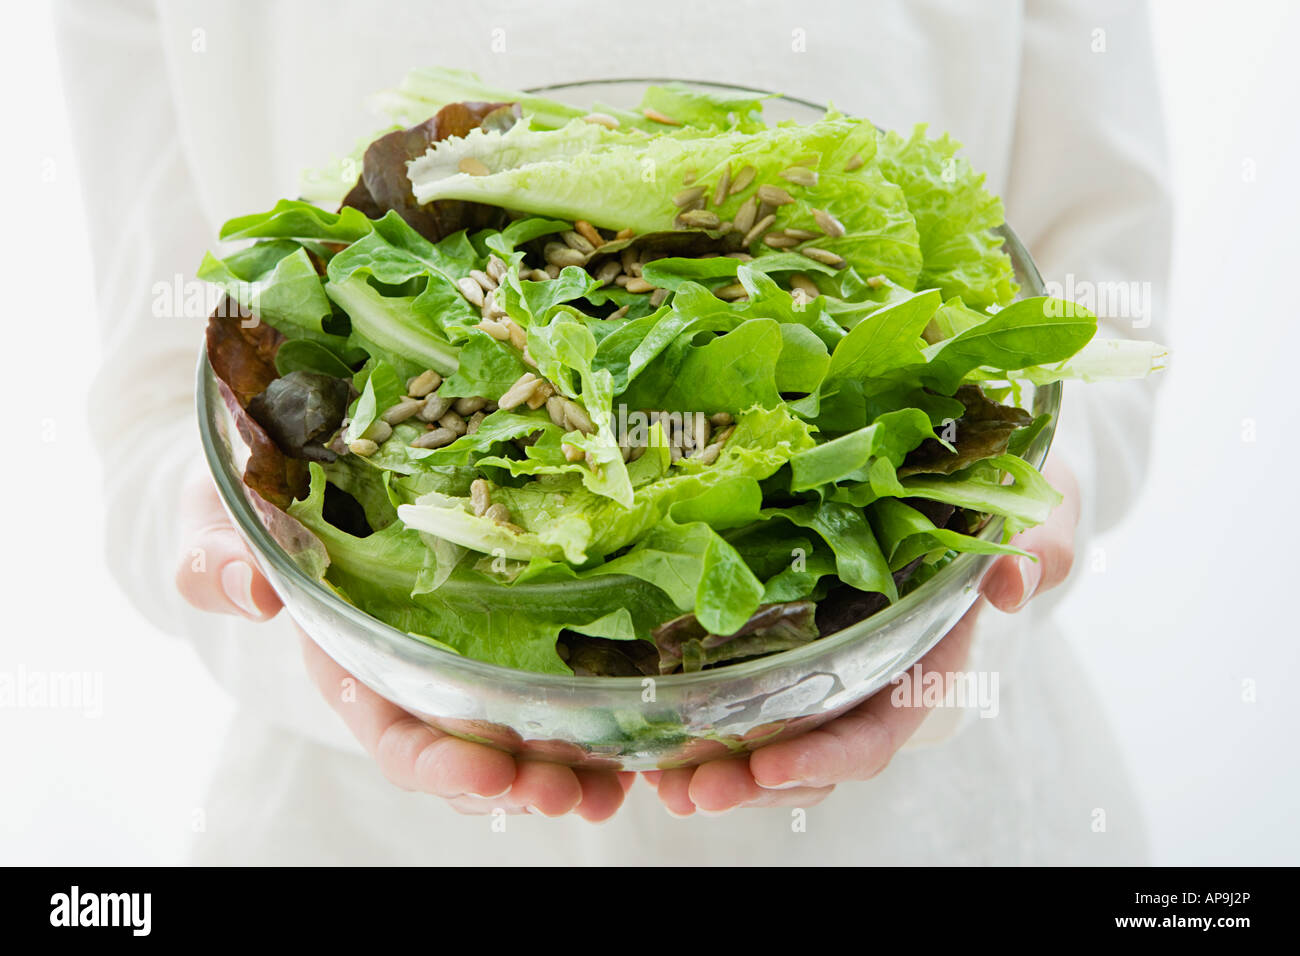 Frau hält eine Schüssel mit Salat Stockfoto